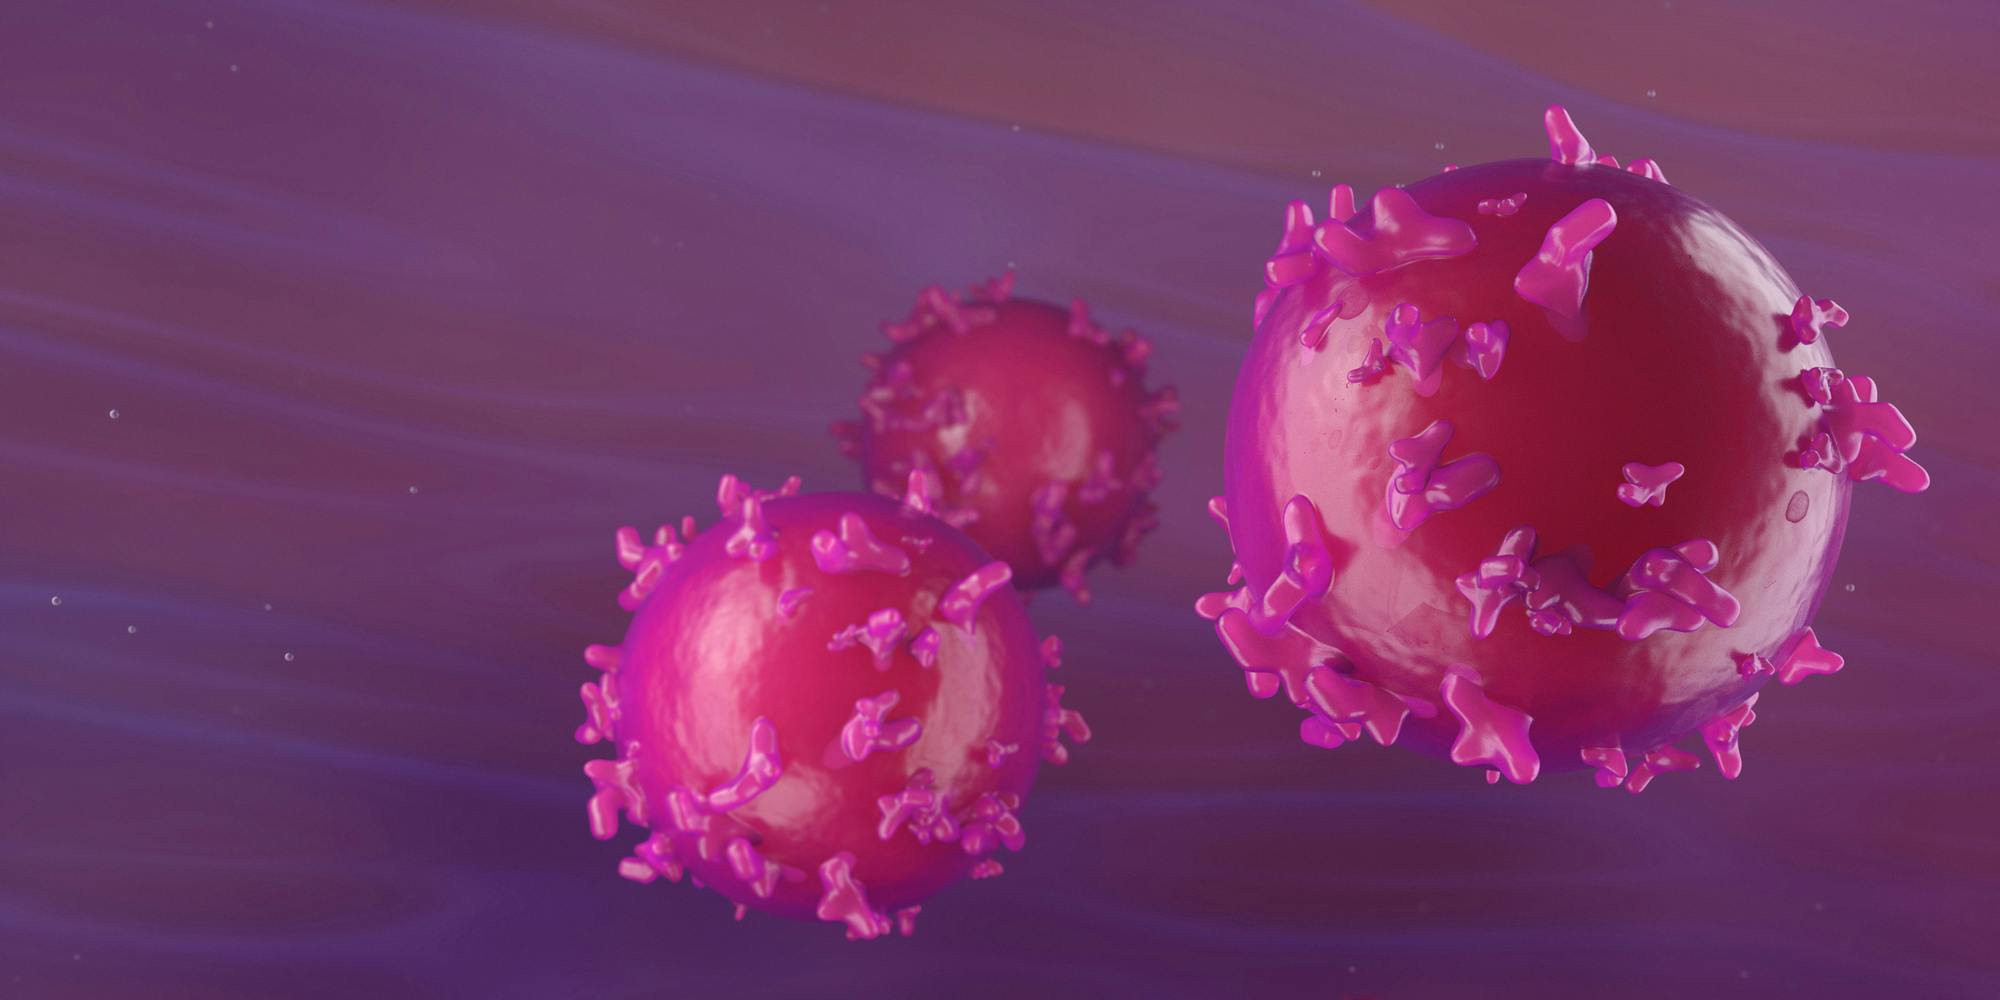 3D Illustration of T-Cells or Cancer Cells